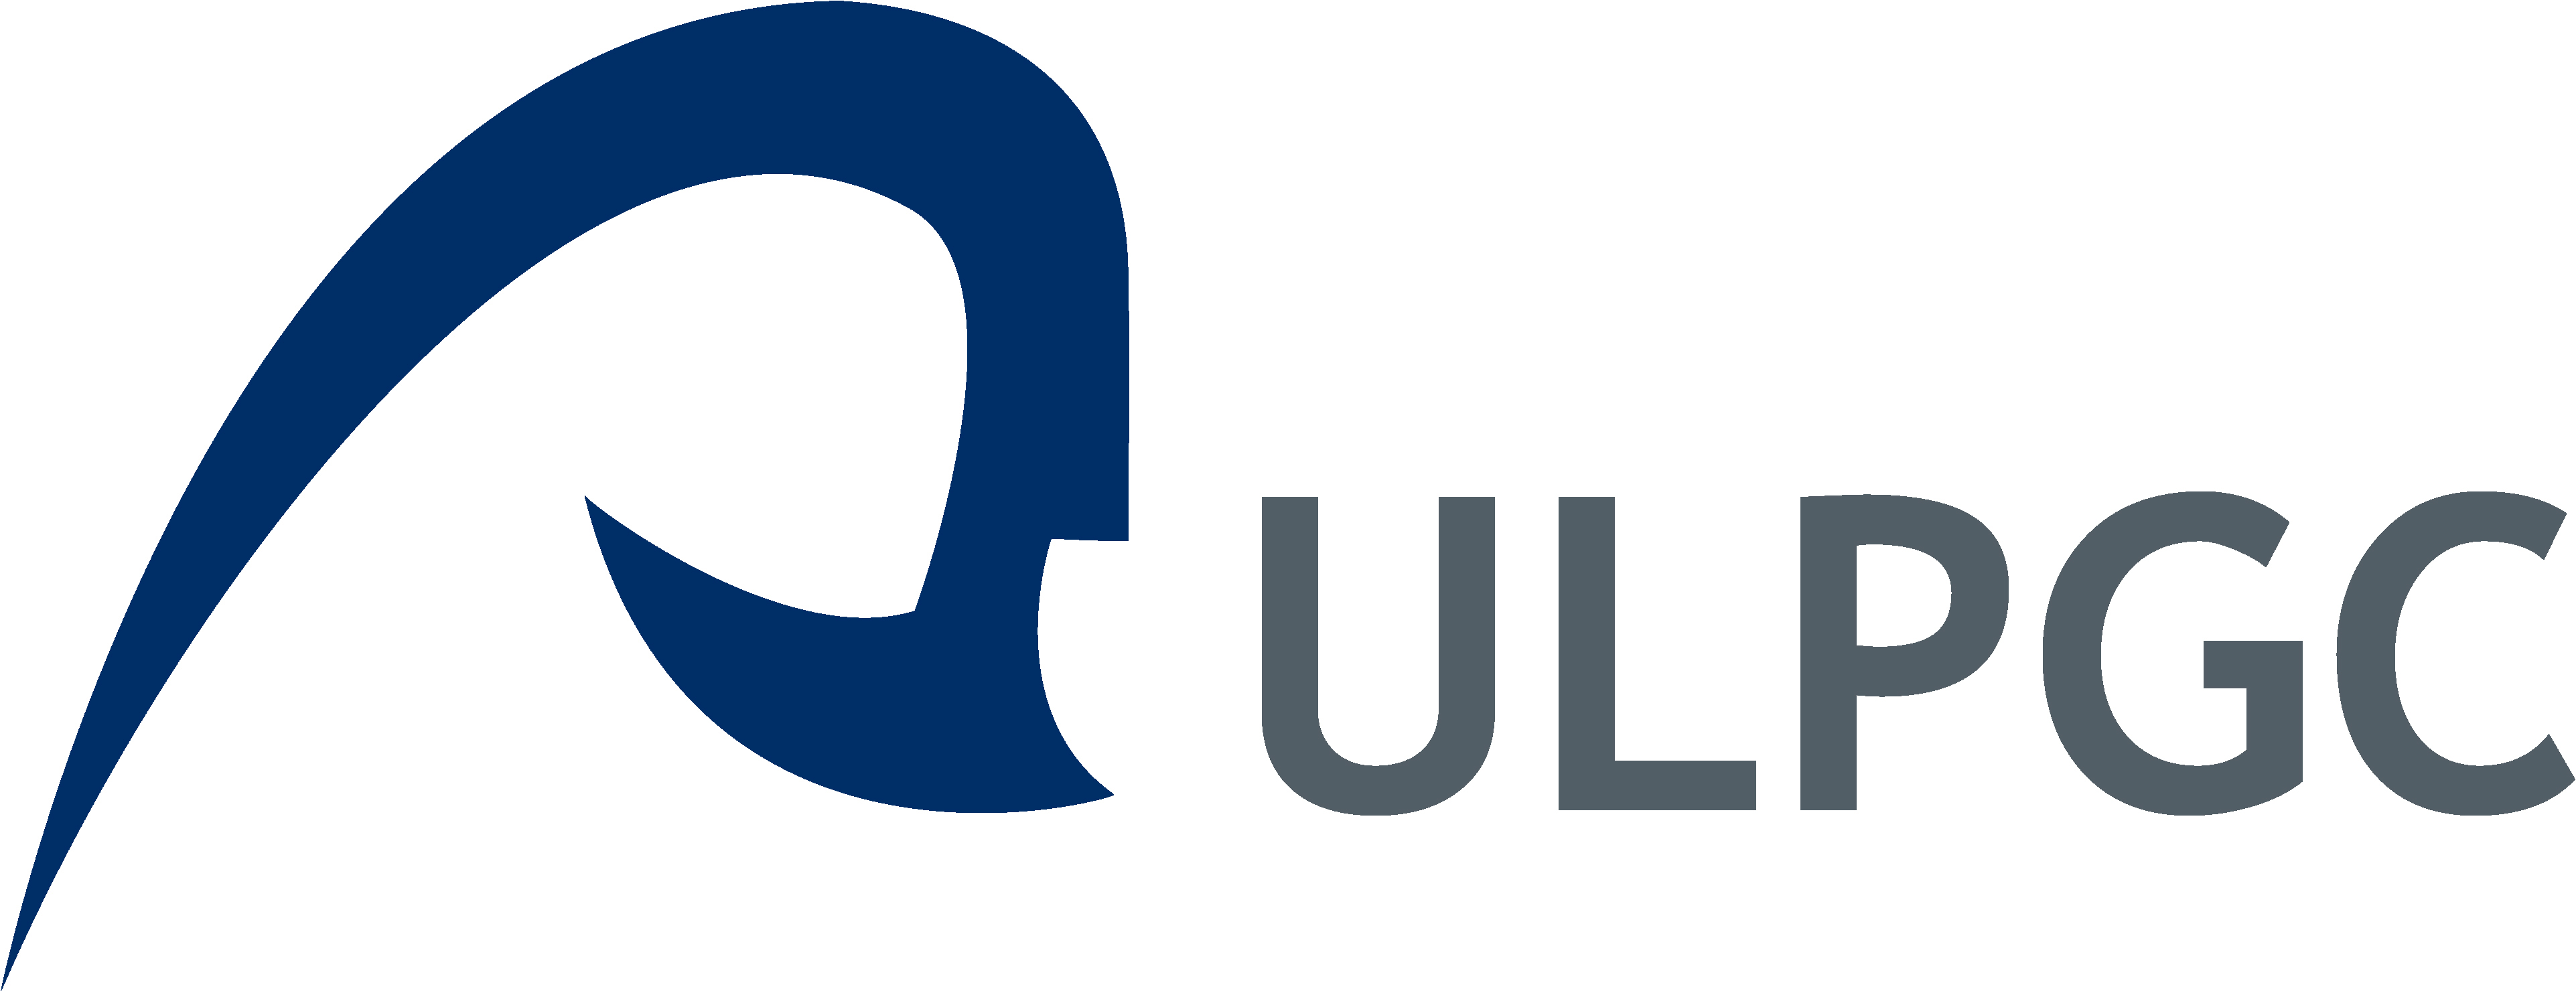 descargar word ulpgc logo